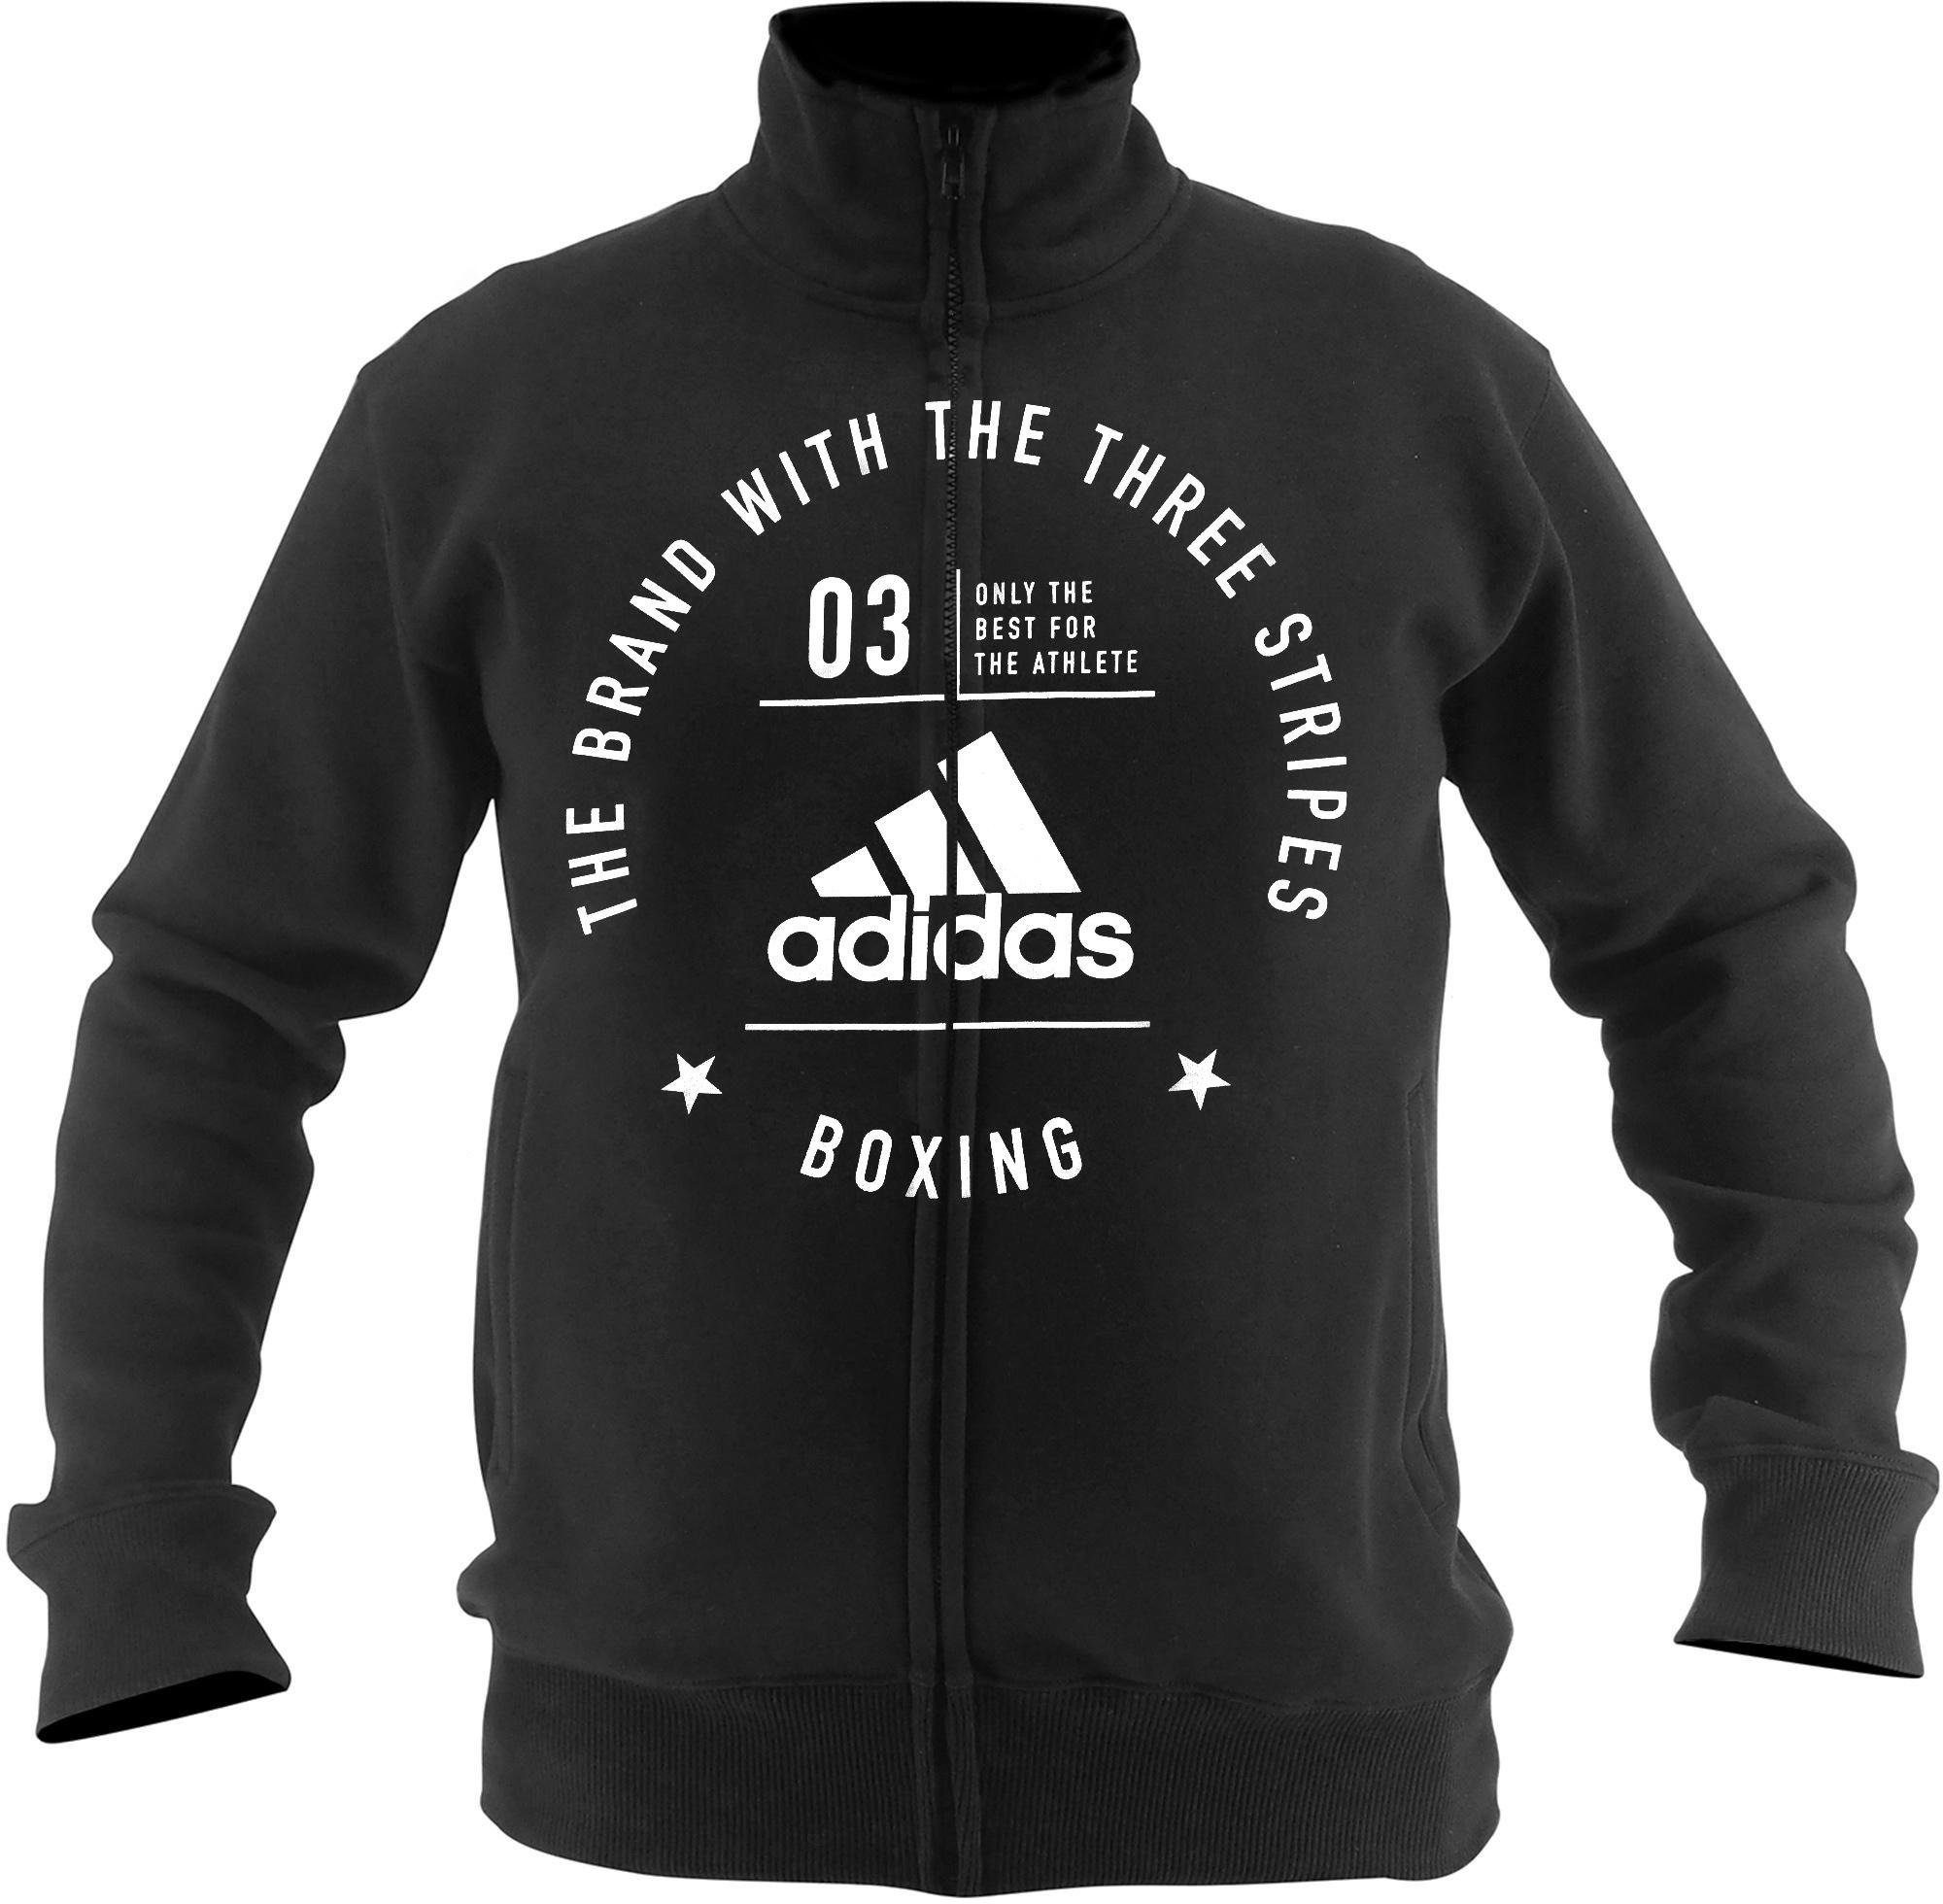 adidas Performance Sweatjacke Community Jacket “Boxing” schwarz-weiß